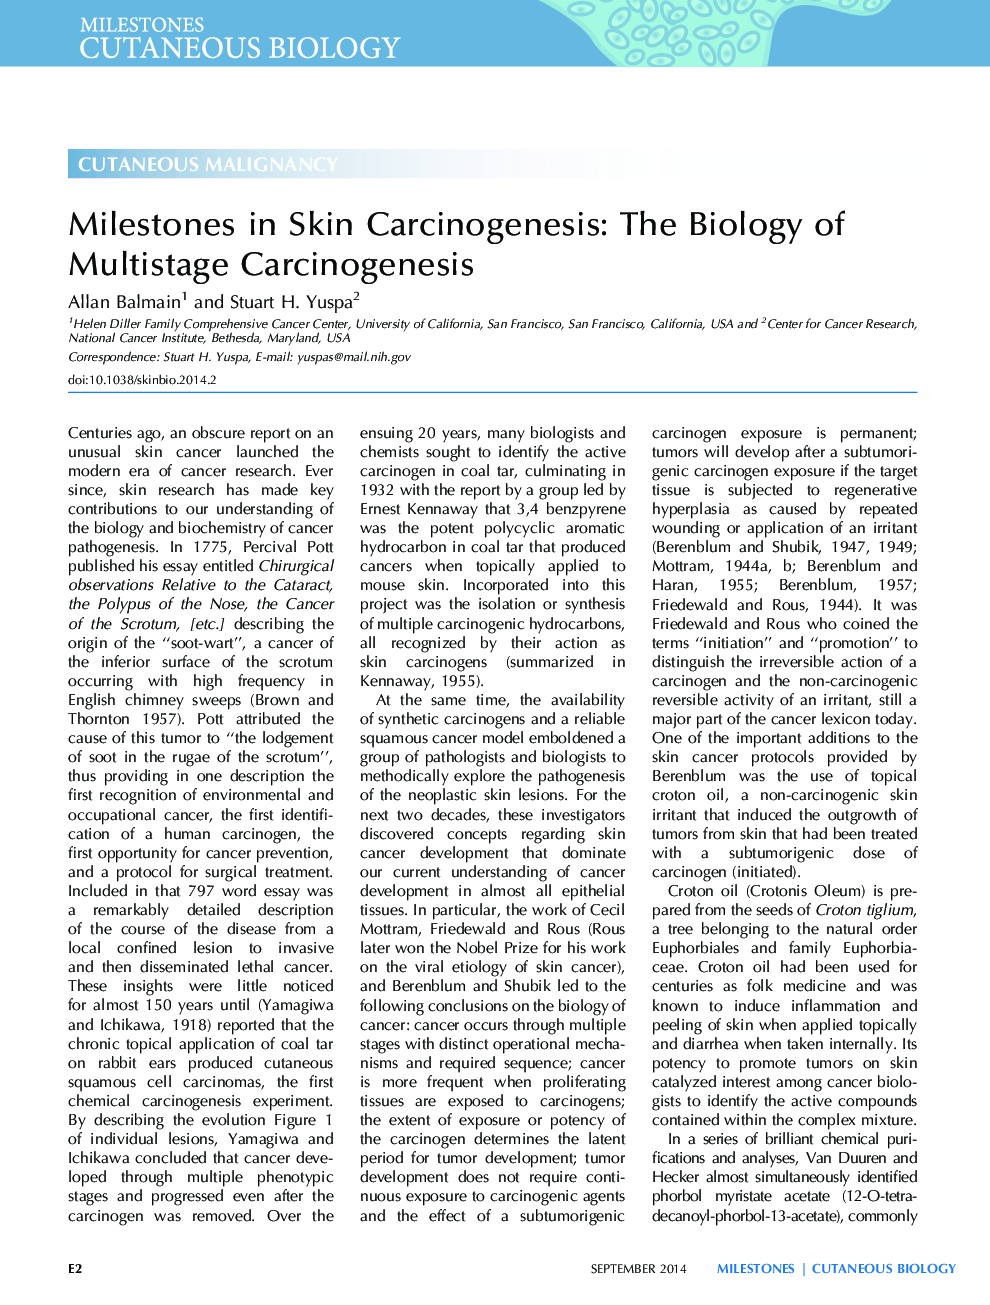 Milestones in Skin Carcinogenesis: The Biology of Multistage Carcinogenesis